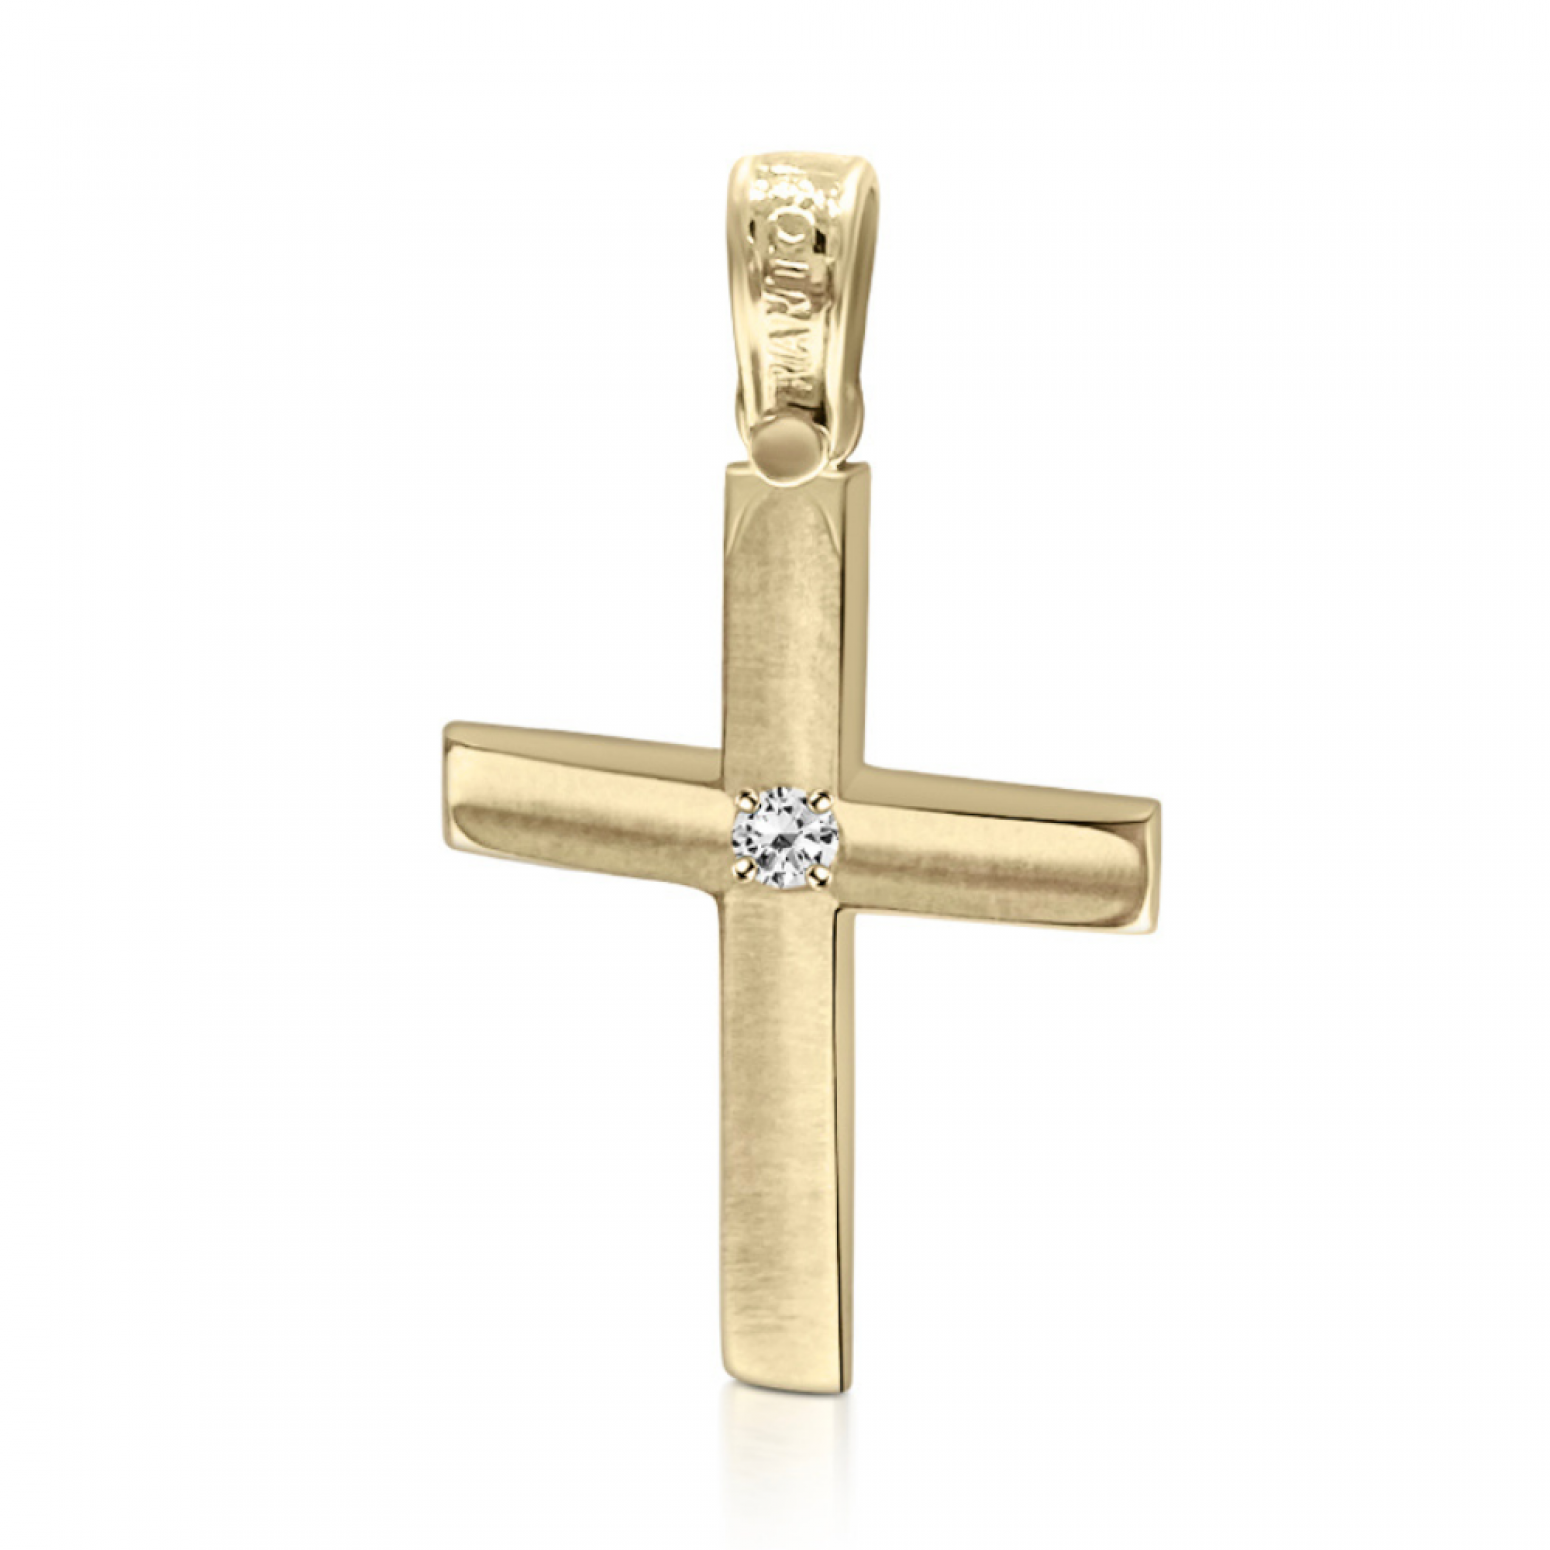 Βαπτιστικός σταυρός Κ14 χρυσό με ζιργκόν st4062 ΣΤΑΥΡΟΙ Κοσμηματα - chrilia.gr